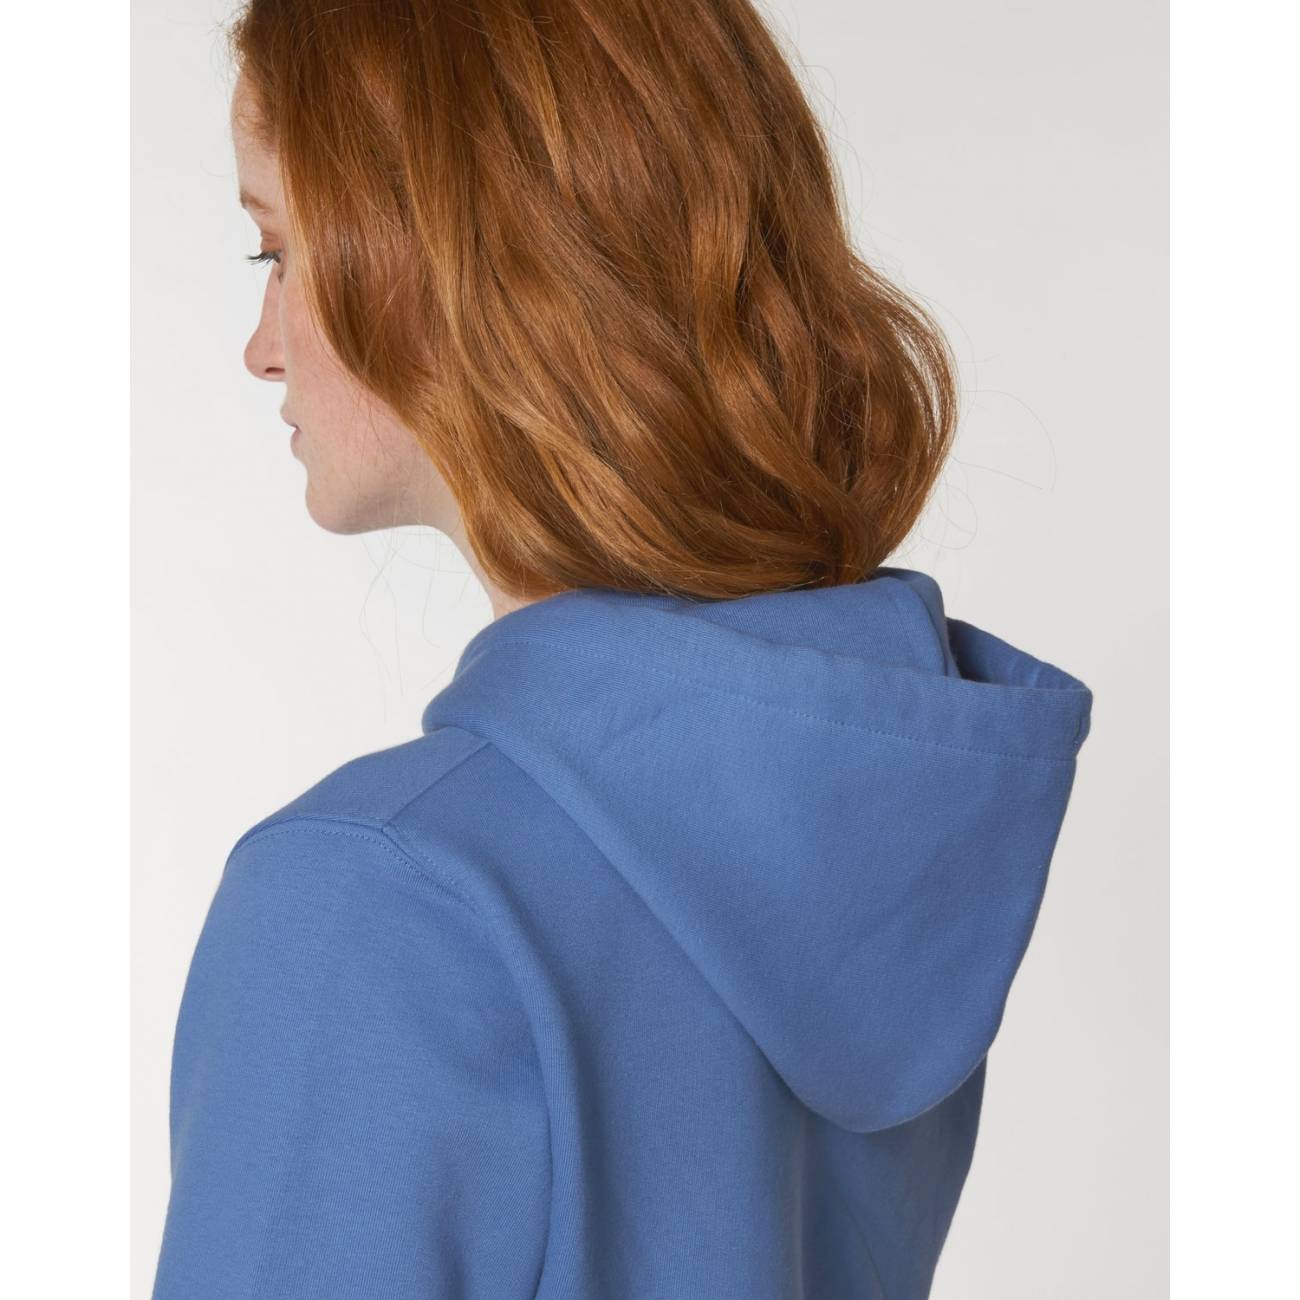 SWEAT-SHIRT Femme Capuche épais et intérieur doux coton BIO Bleu